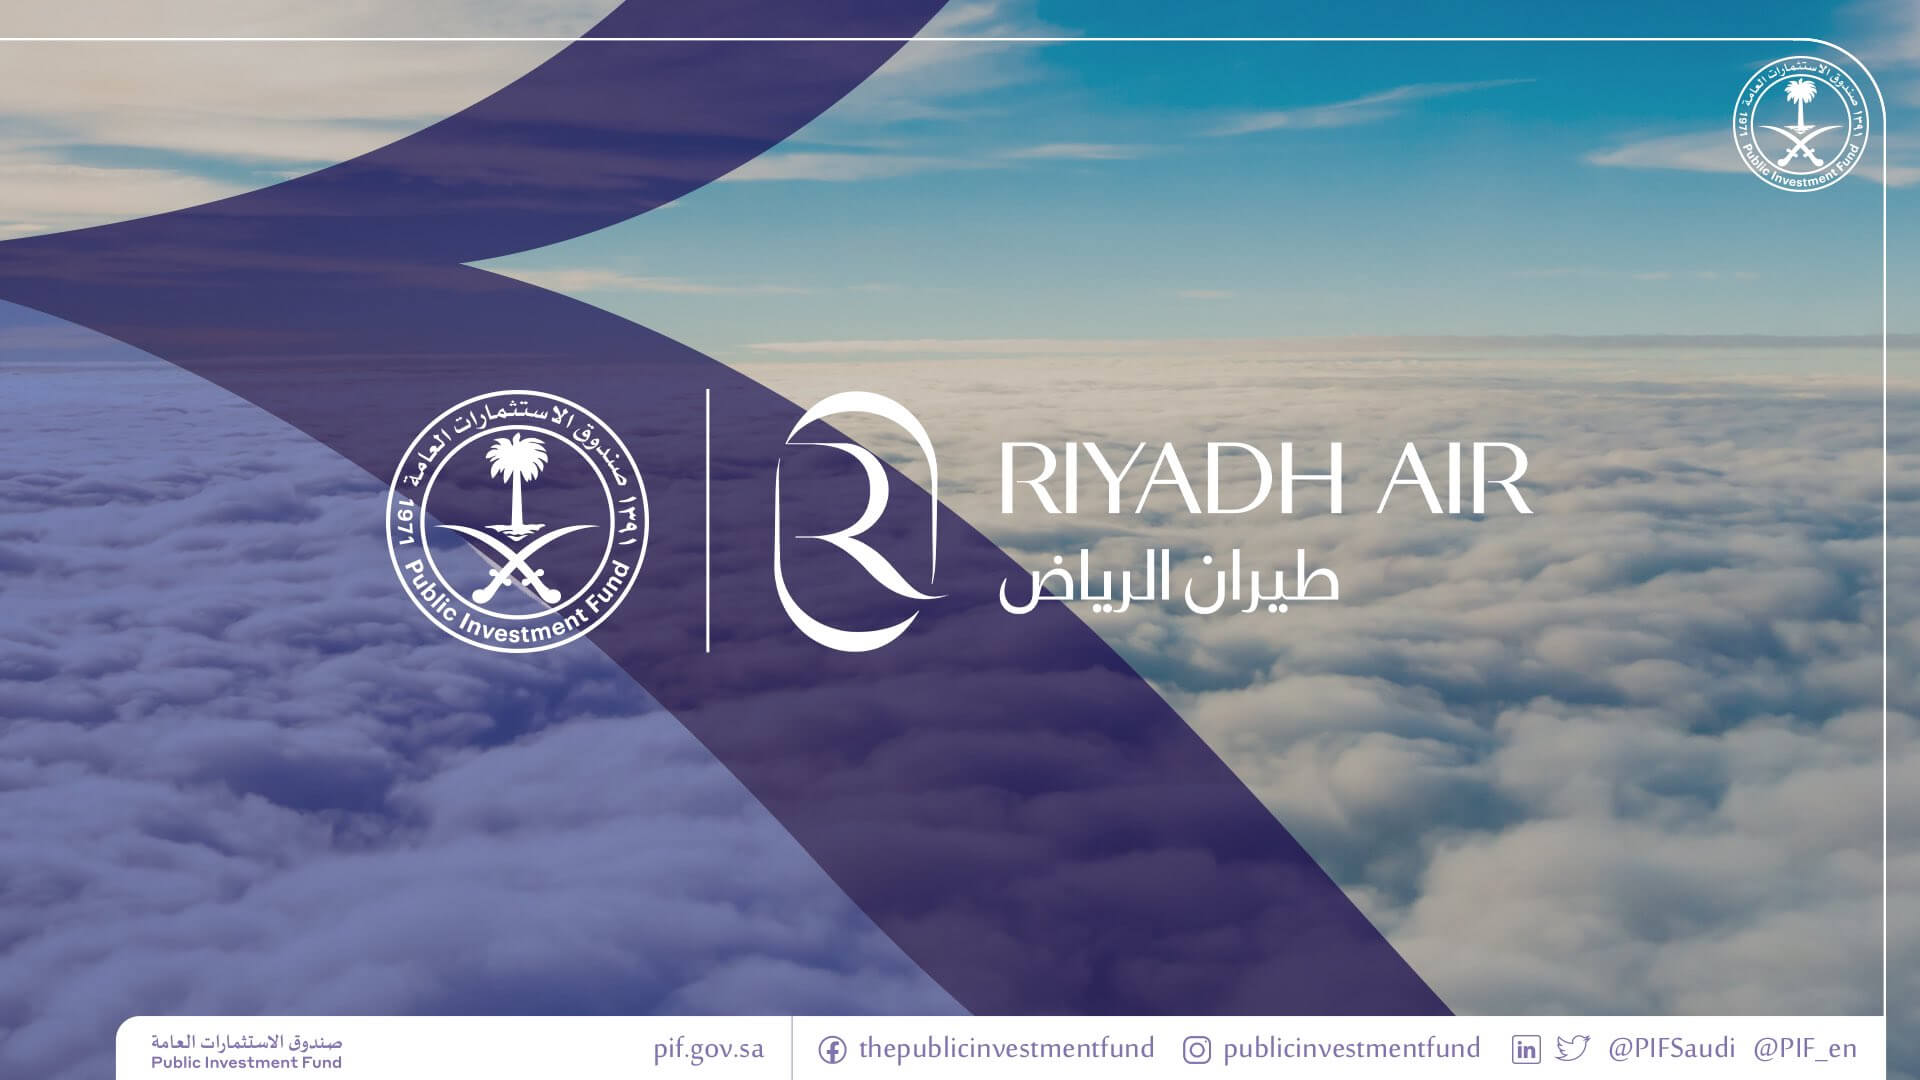 Compagnie aérienne : Riyadh Air est lancée avec des moyens colossaux